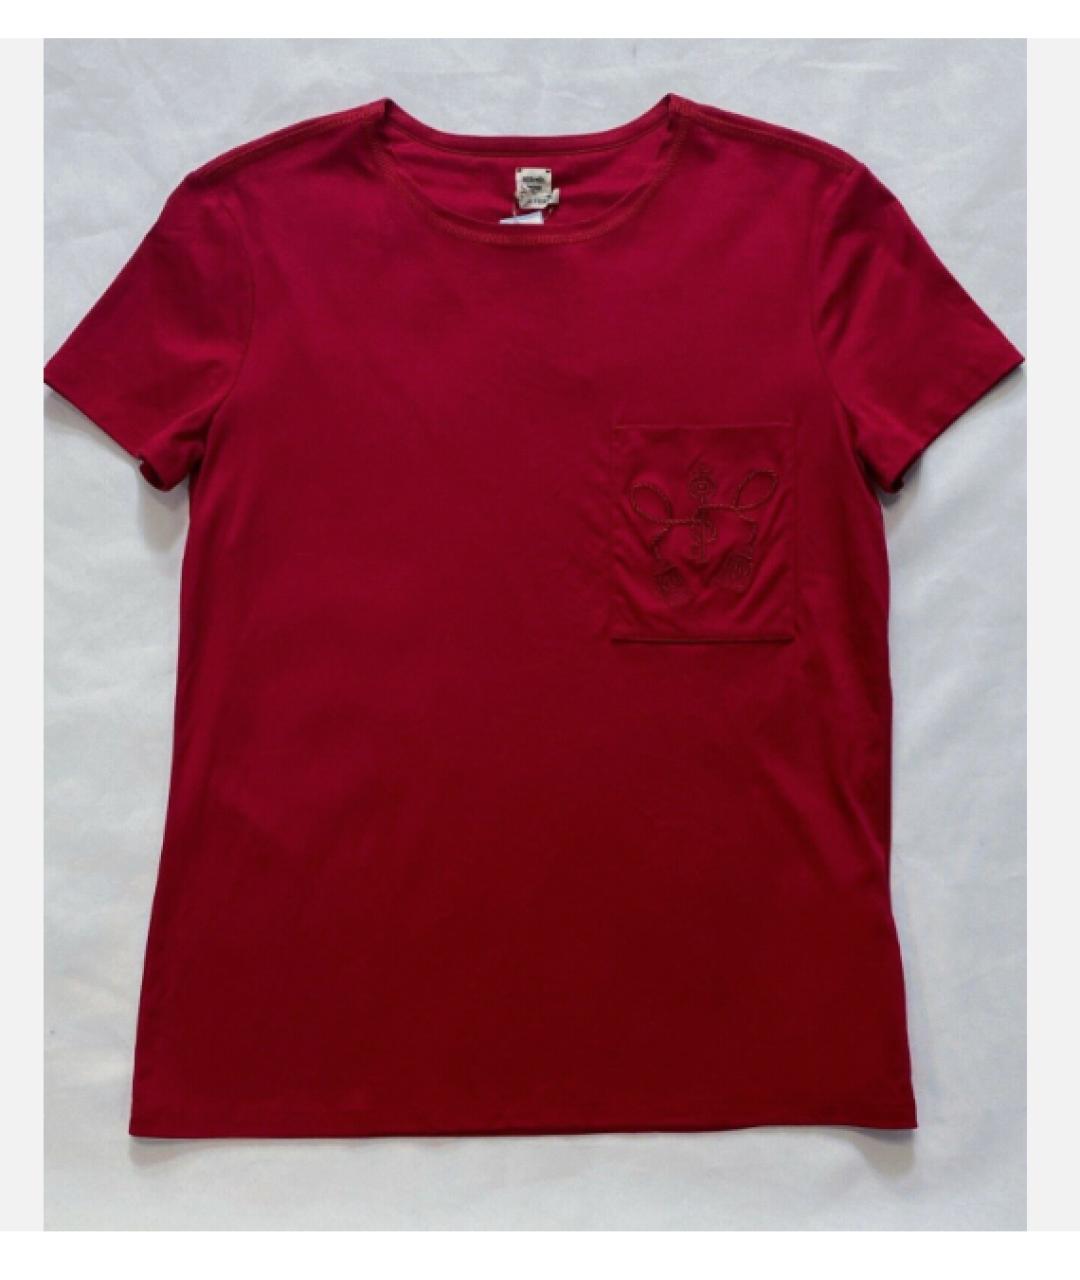 HERMES PRE-OWNED Красная хлопковая футболка, фото 6